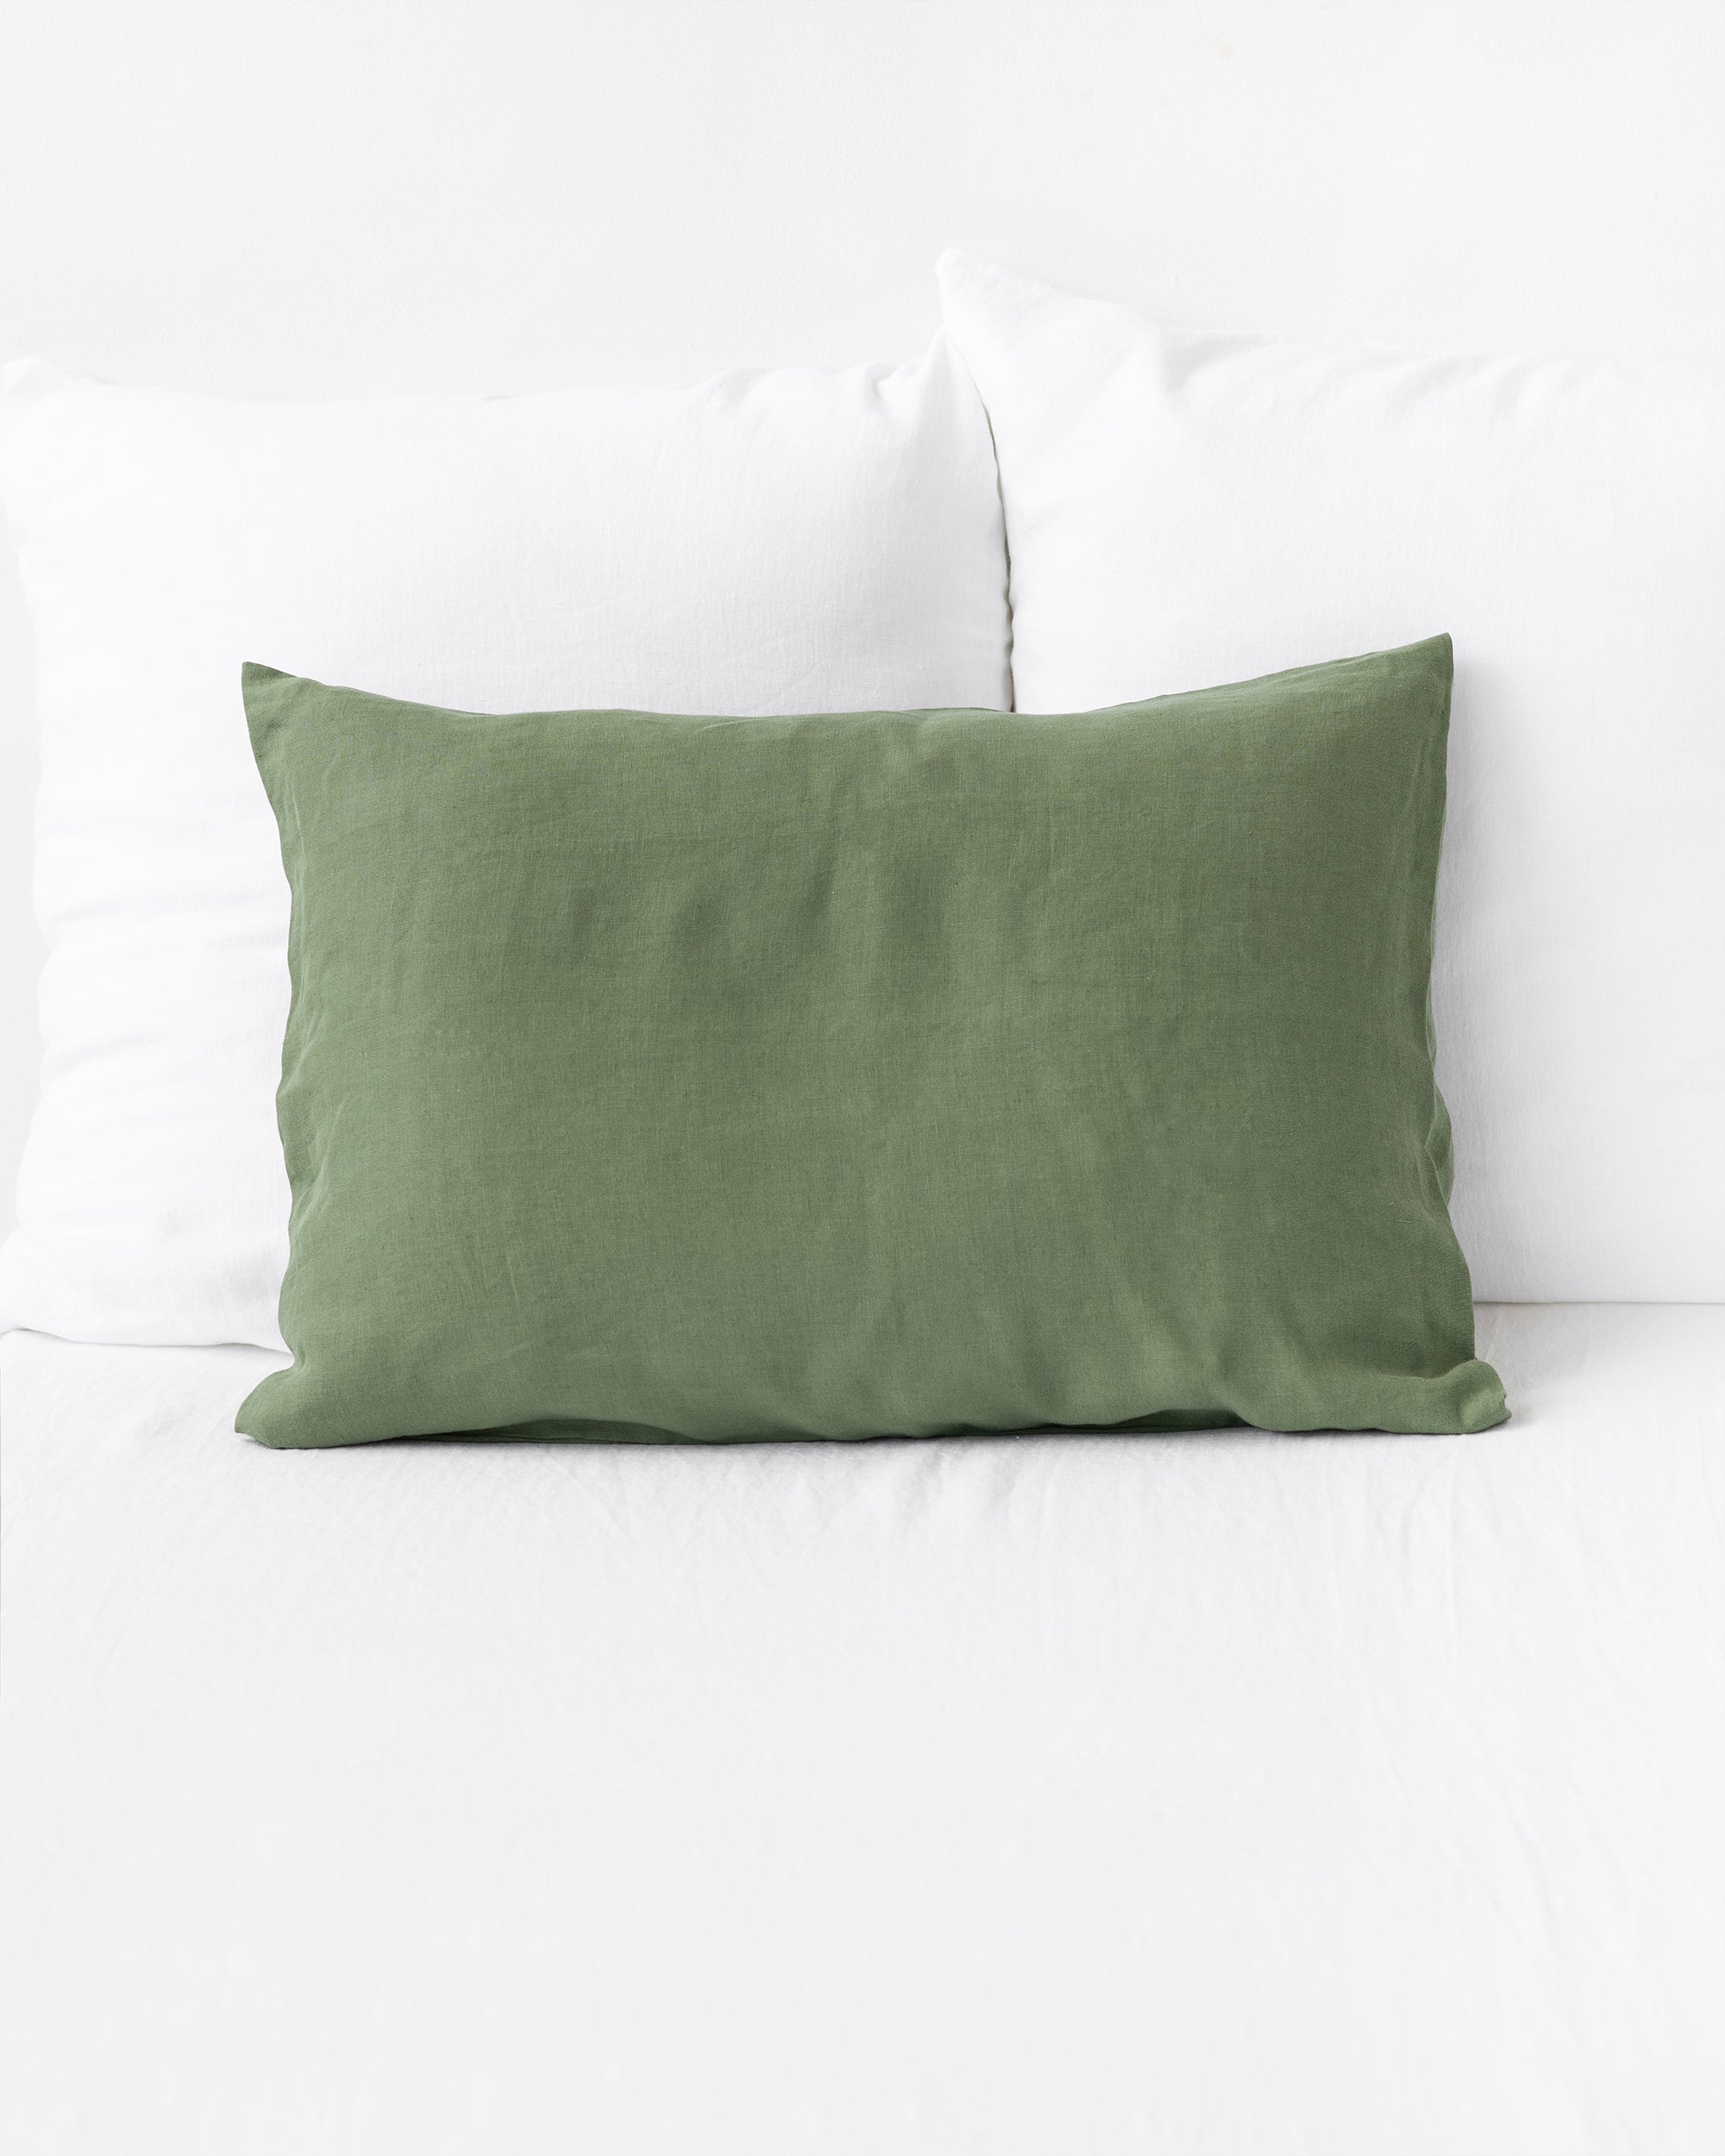 http://magiclinen.com/cdn/shop/products/forest-green-linen-pillowcase-1.jpg?v=1665410334